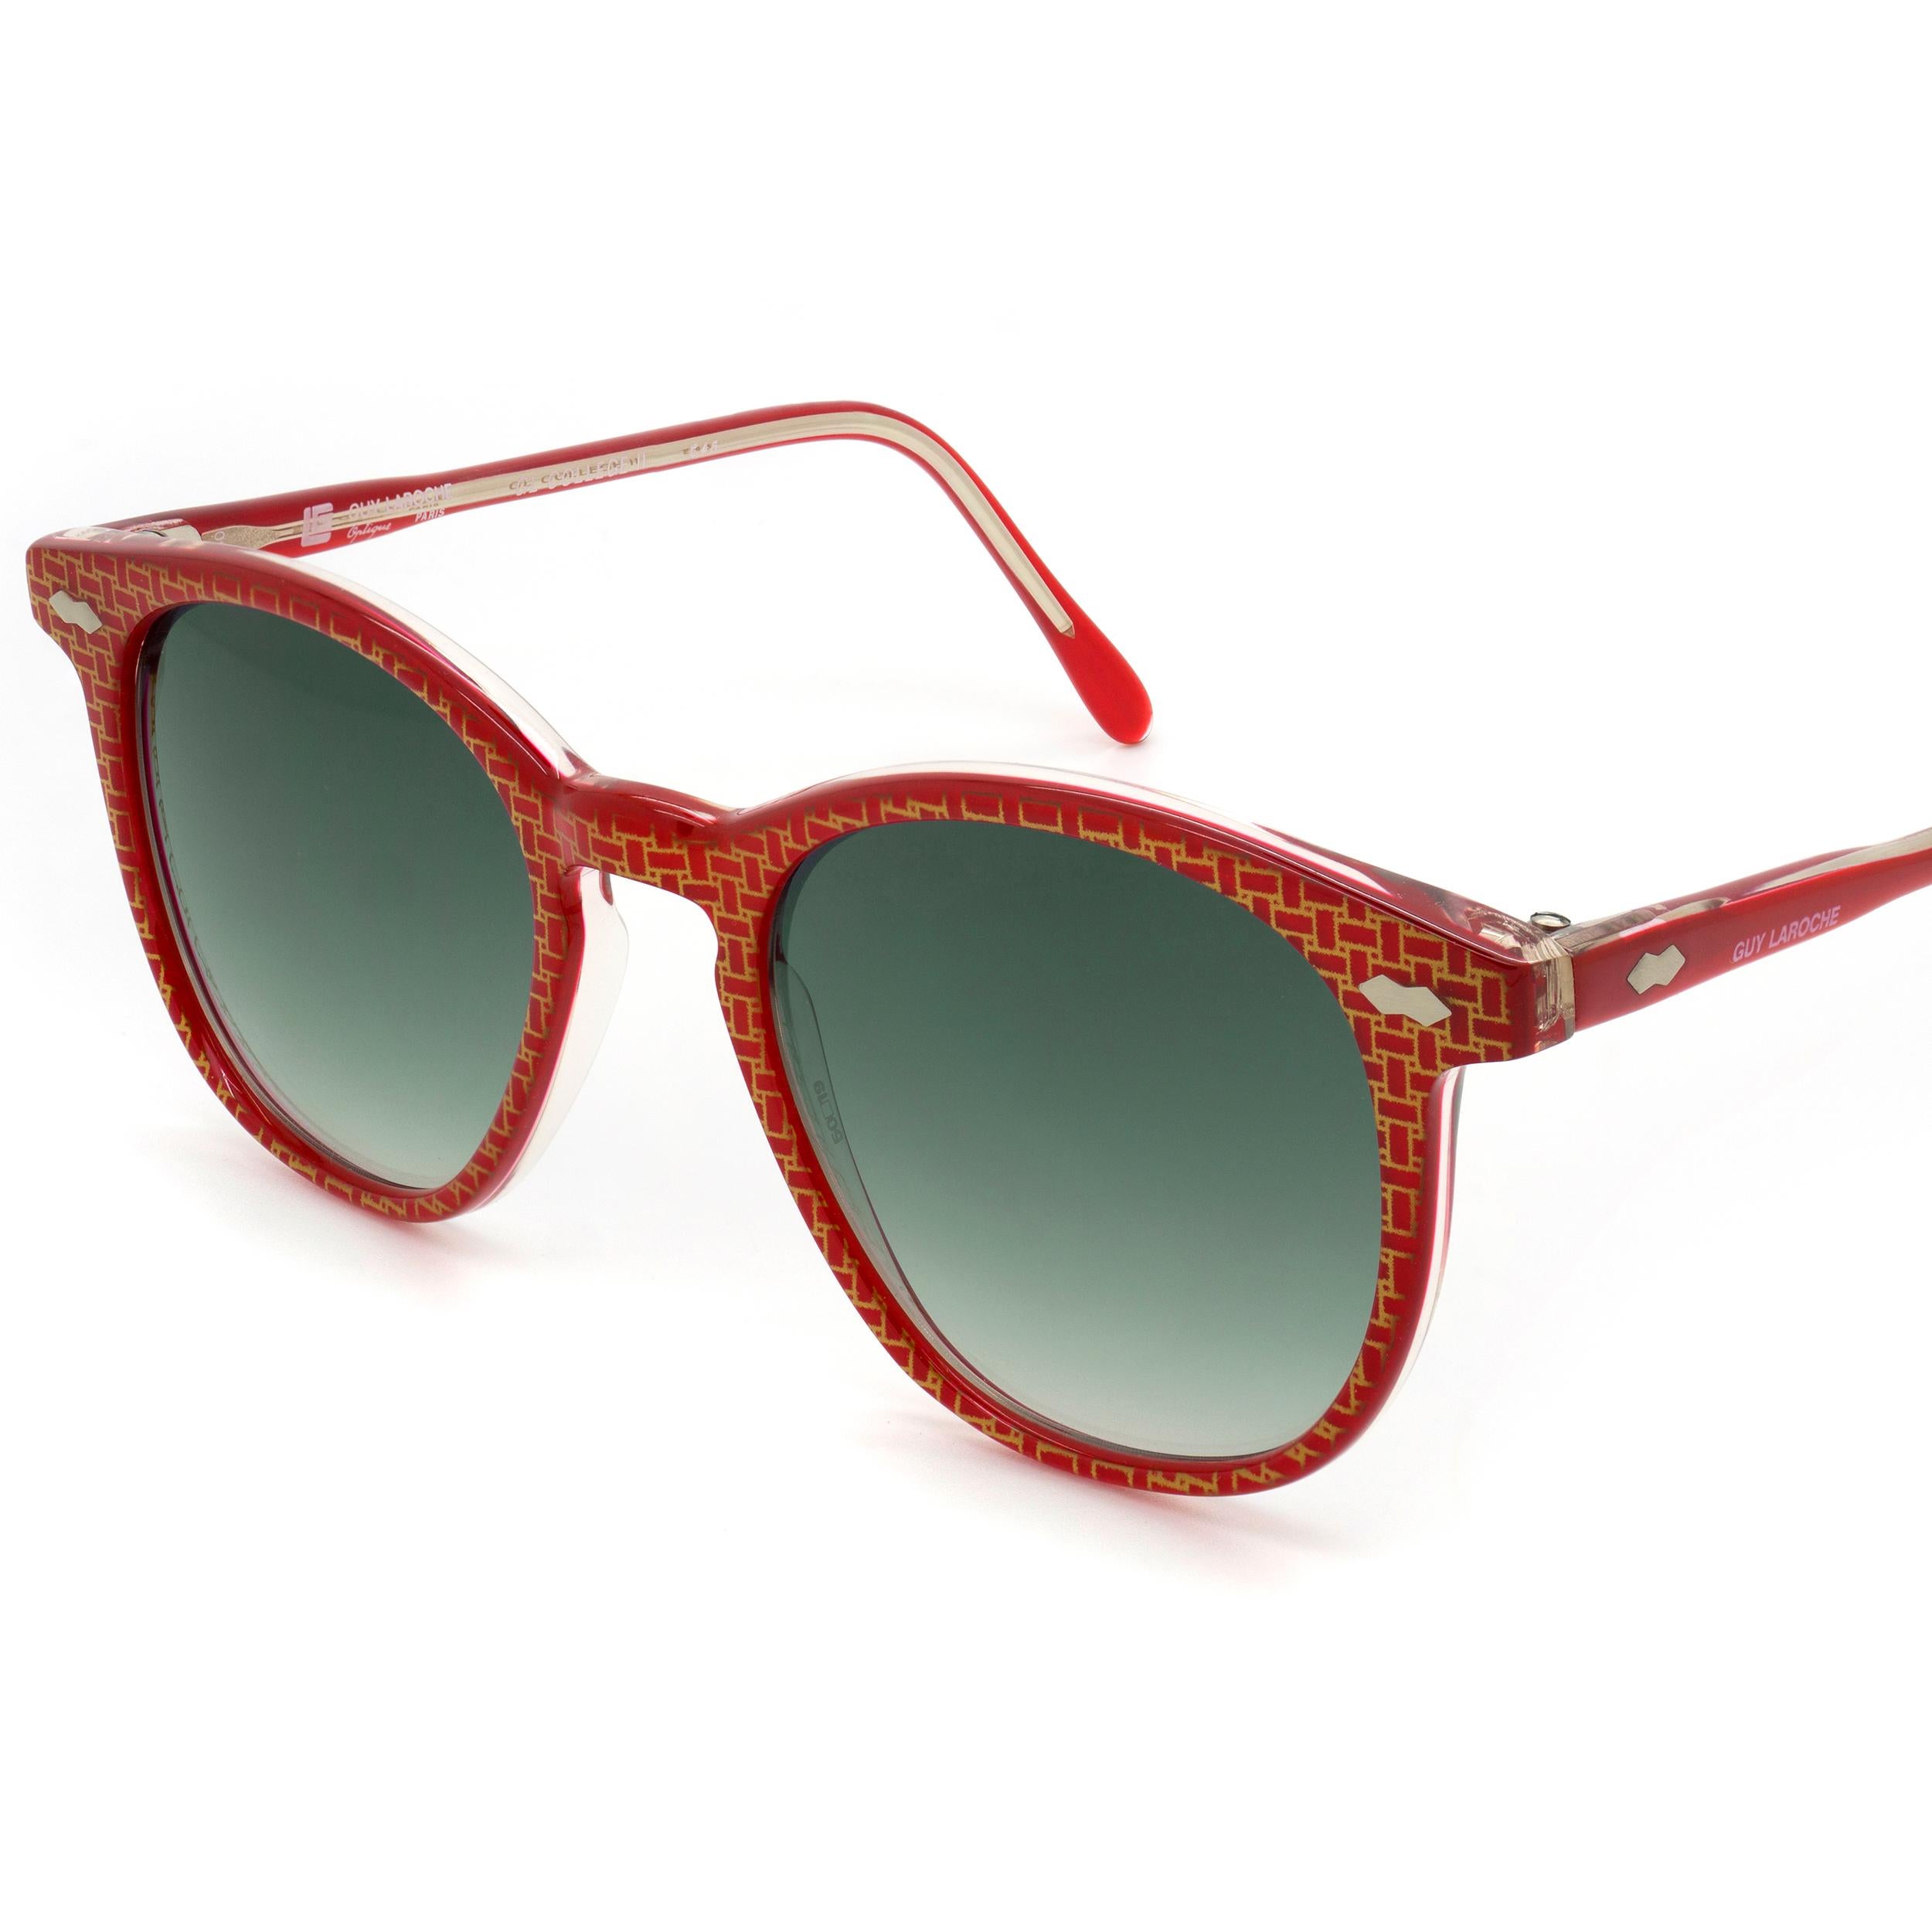 Women's or Men's Guy Laroche vintage sunglasses, made in France